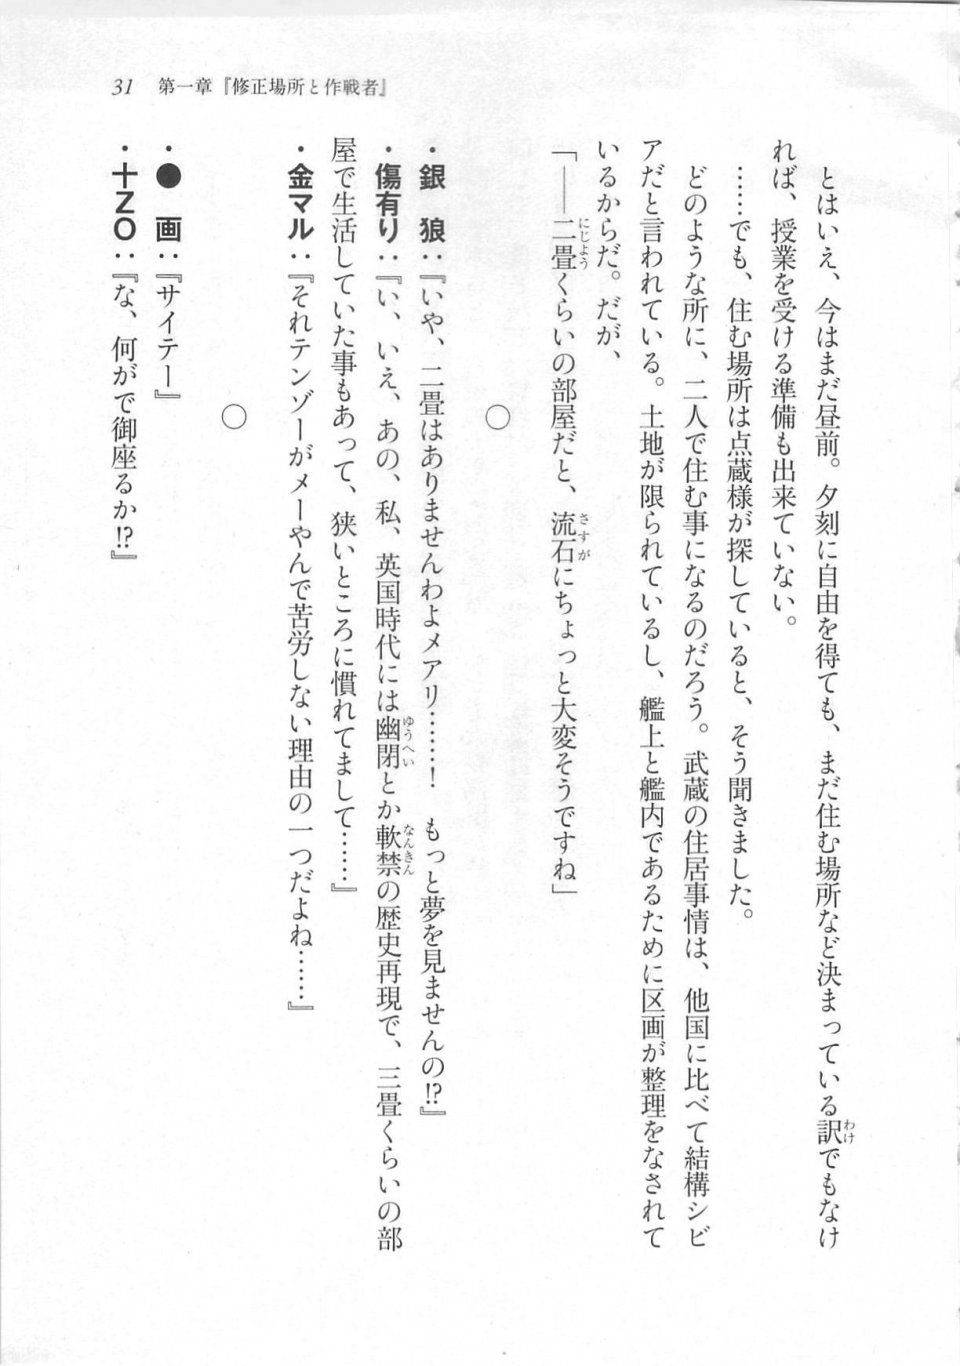 Kyoukai Senjou no Horizon LN Sidestory Vol 3 - Photo #35